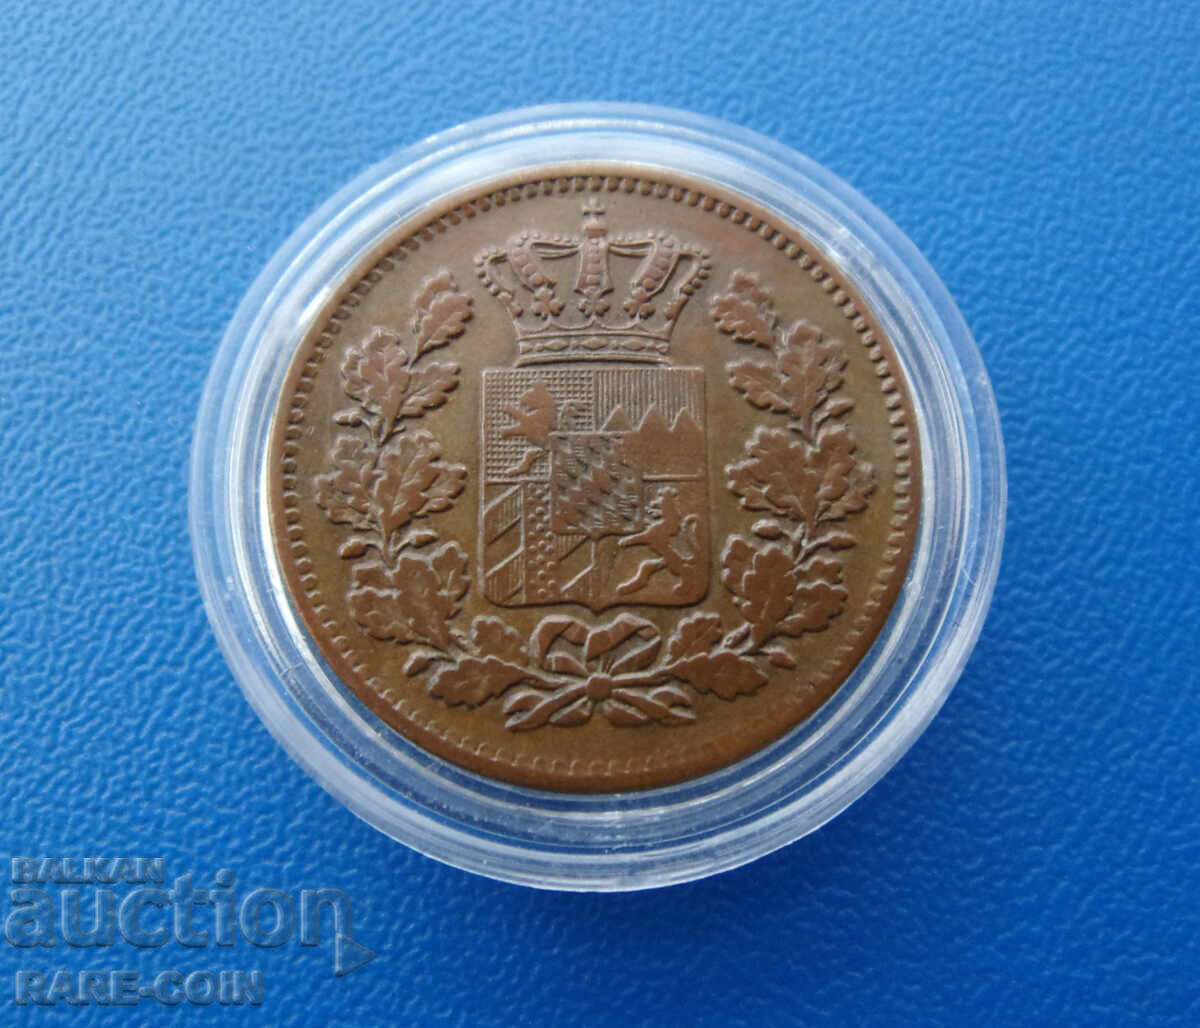 RS(53) Bayern Germany 2 Pfennig 1871 Rare